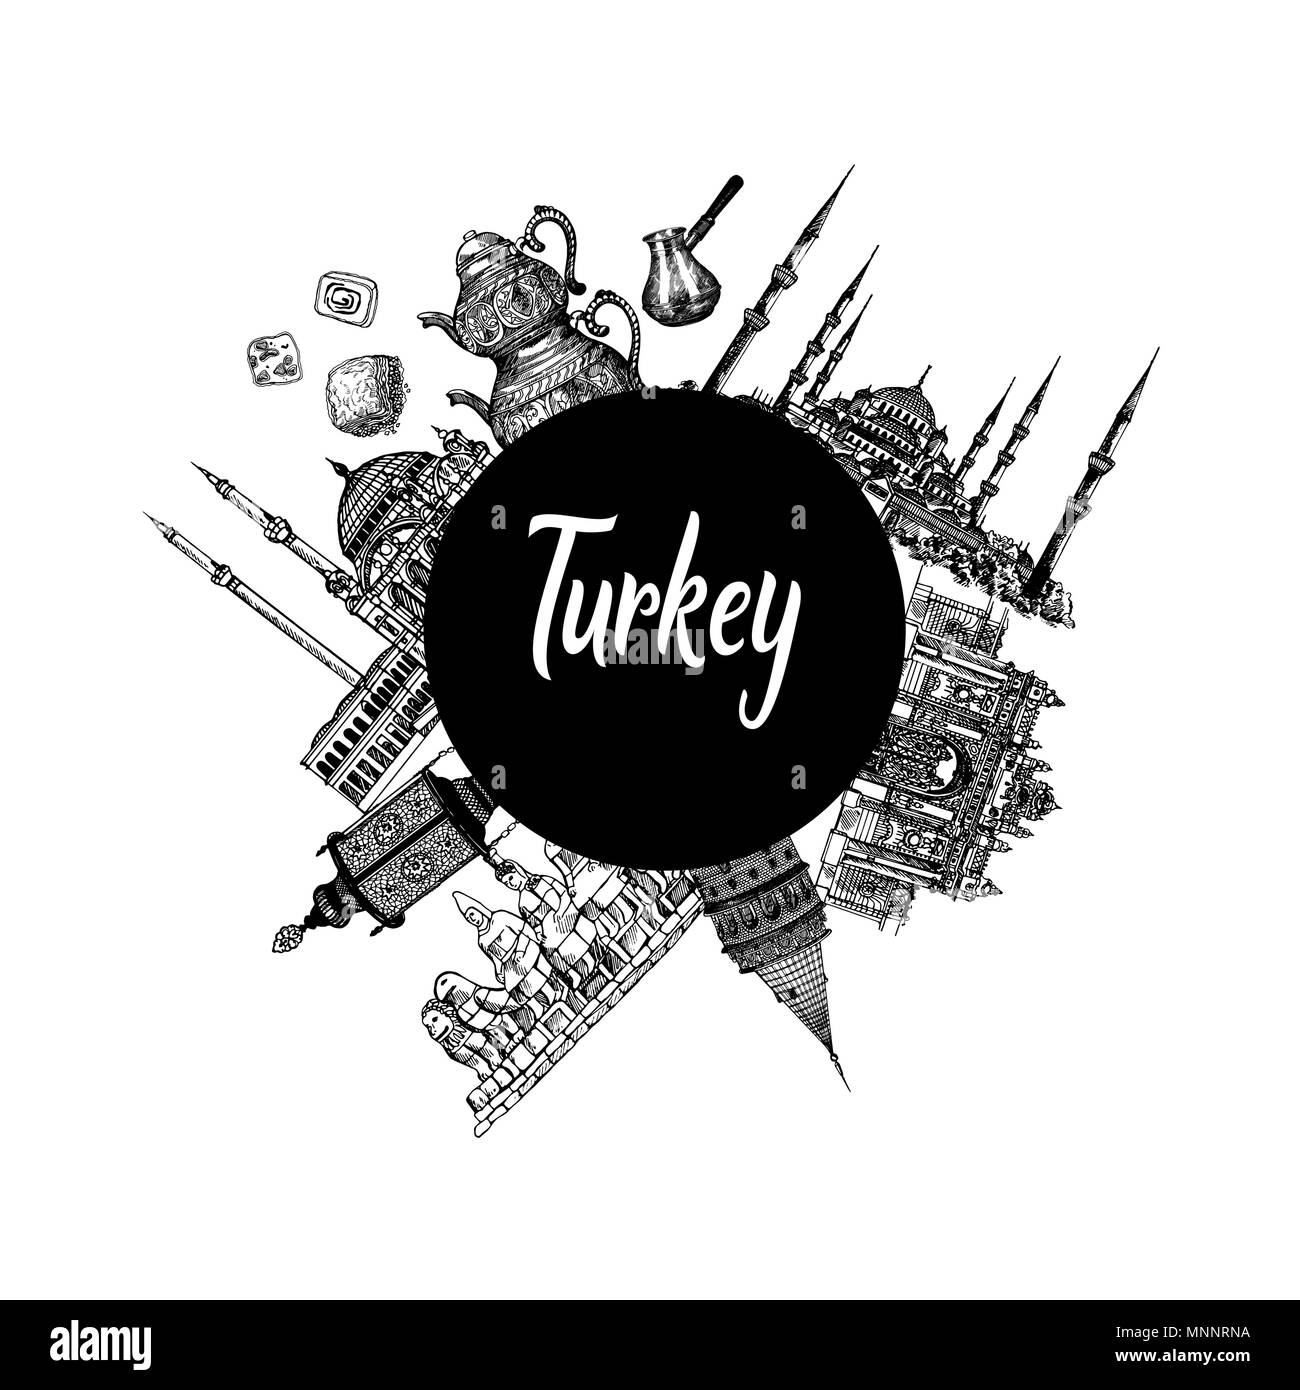 Zusammensetzung von Hand gezeichnete Skizze Stil der Türkei ähnliche Objekte auf weißem Hintergrund. Vector Illustration. Stock Vektor